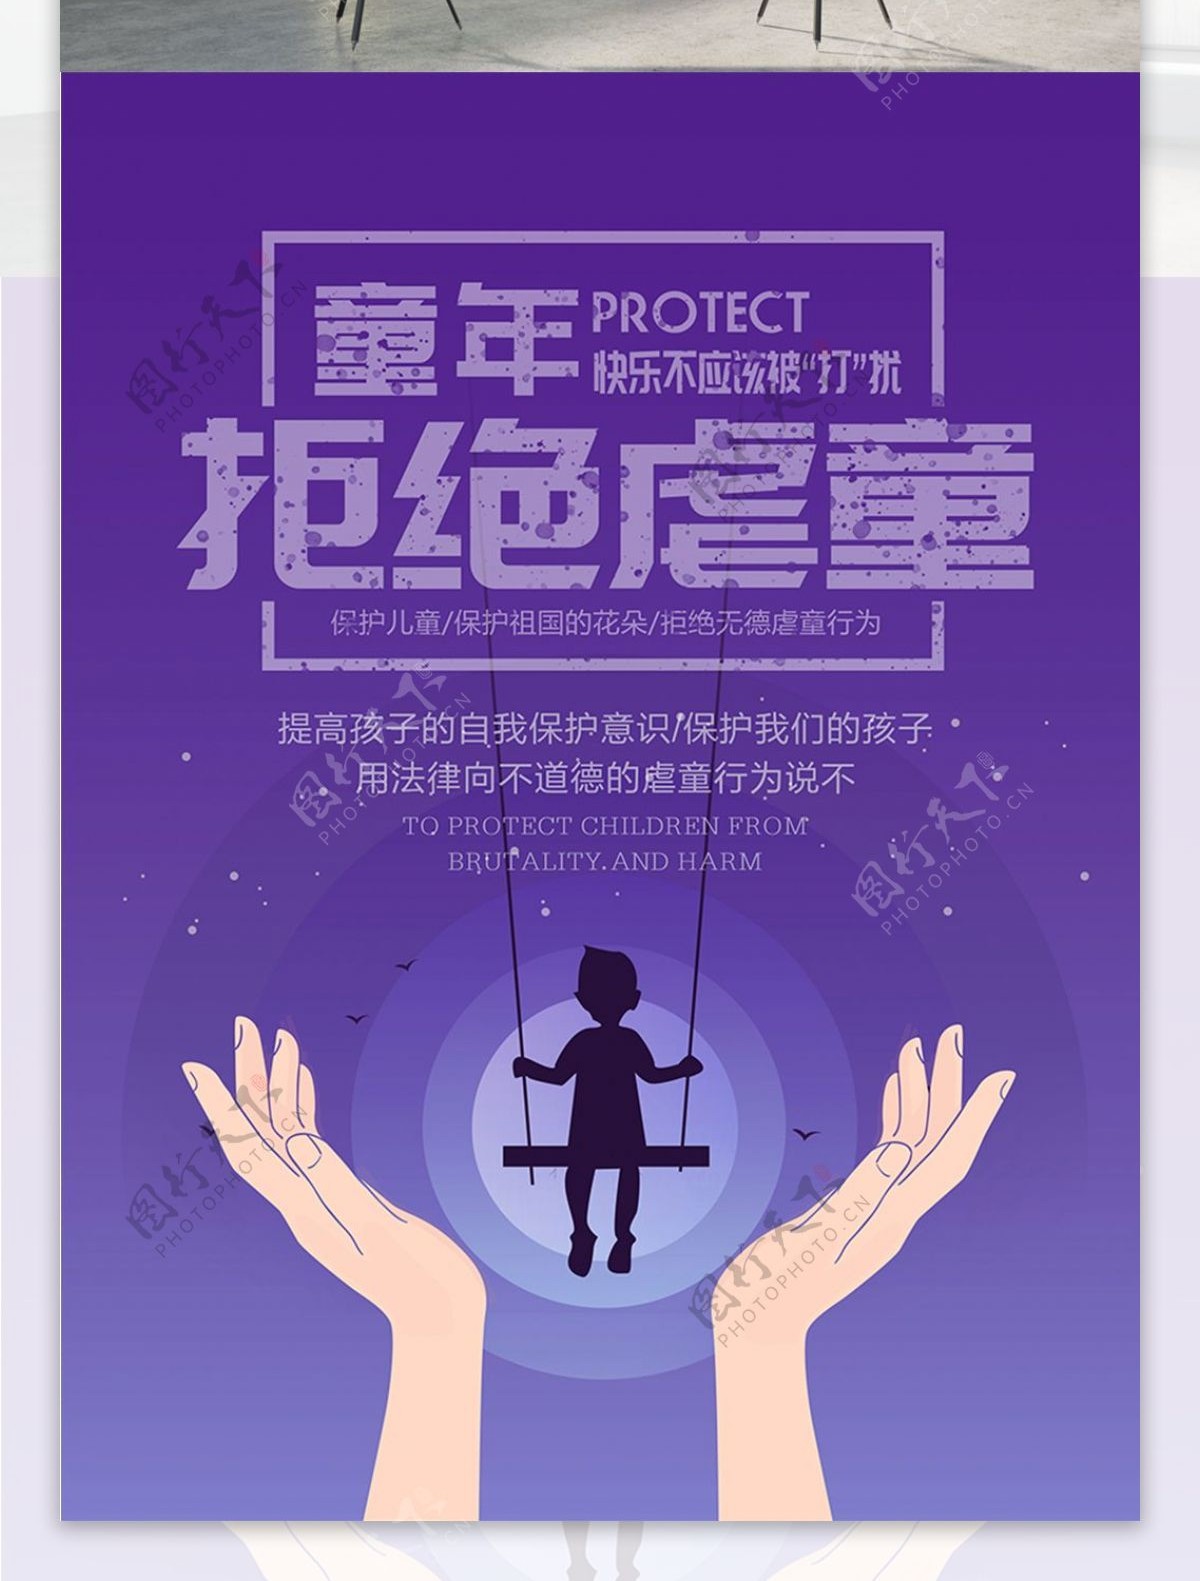 拒绝虐童创意公益宣传海报psd源文件